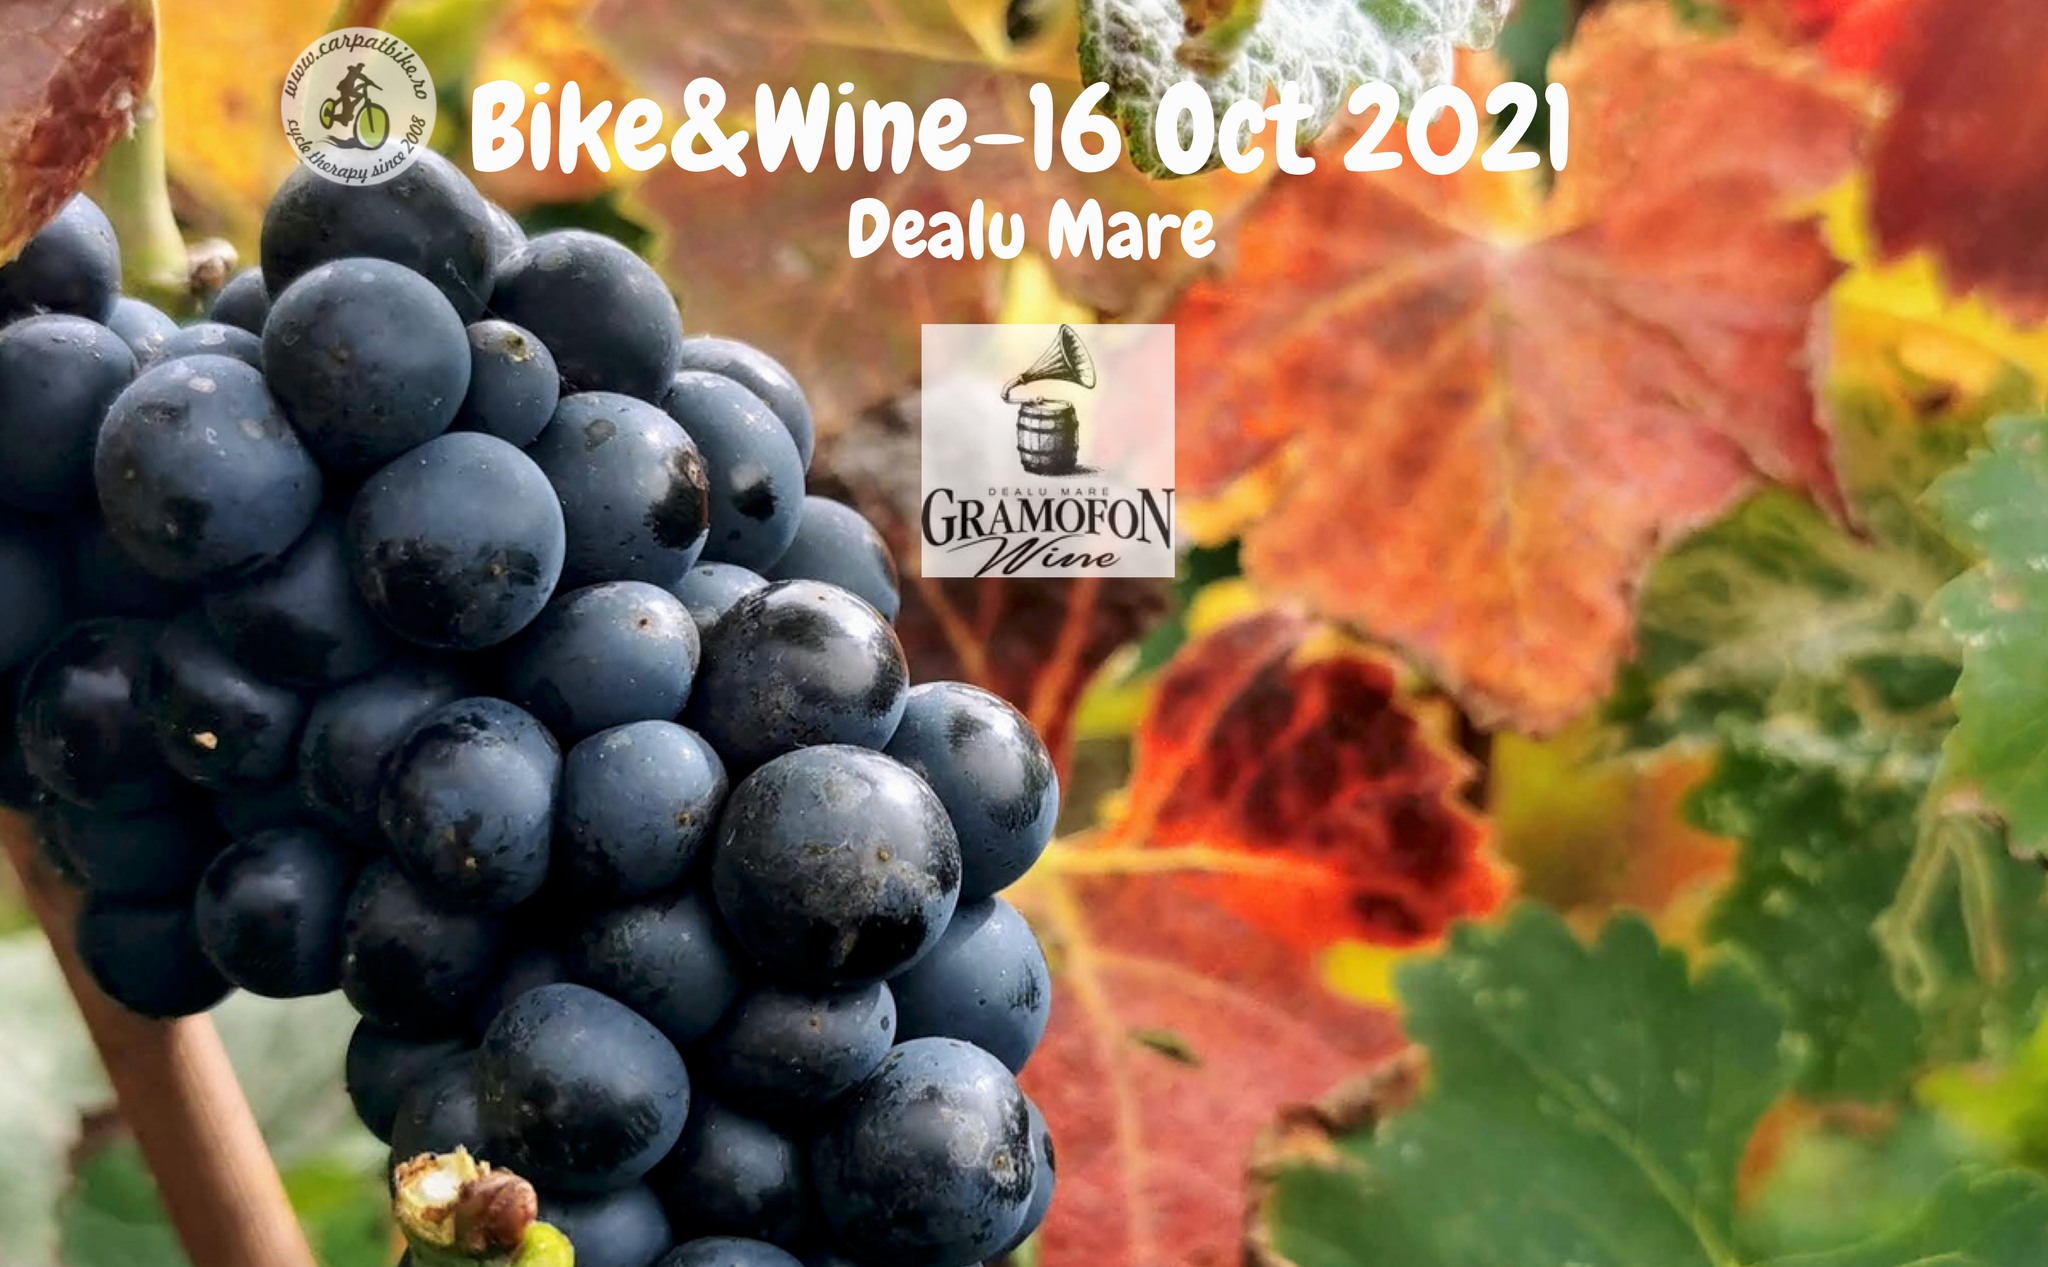 Bike&Wine - Gramofon Wine! (Dealu Mare)